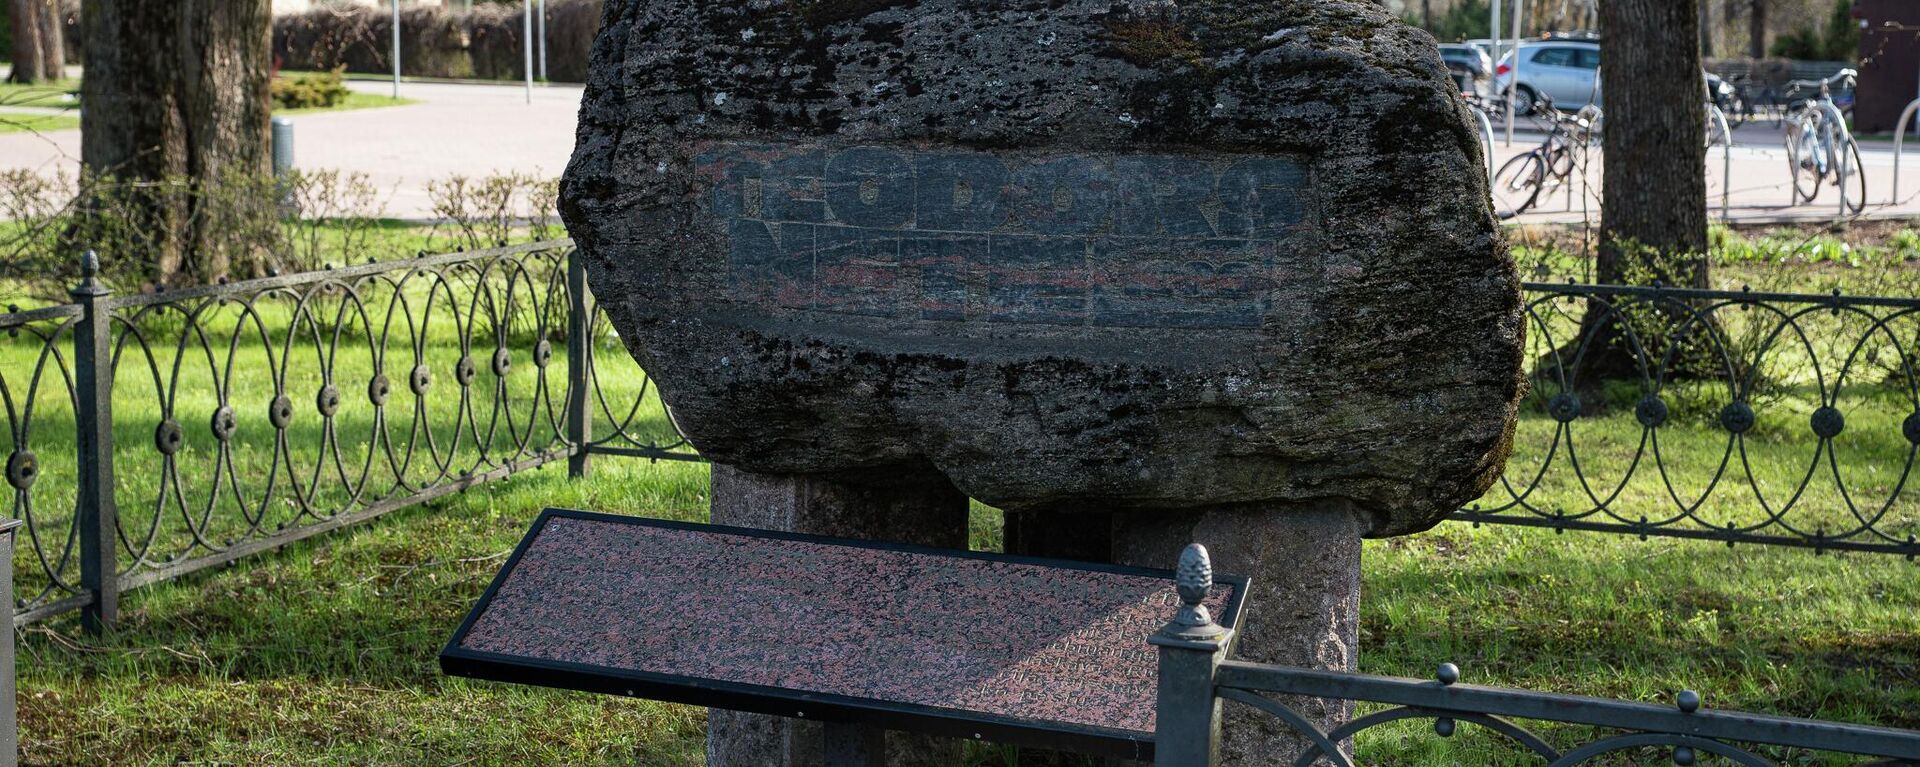 Представители РСЛ провели пикет против сноса памятного камня Теодору Нетте на станции Икшкеле - Sputnik Латвия, 1920, 30.04.2022